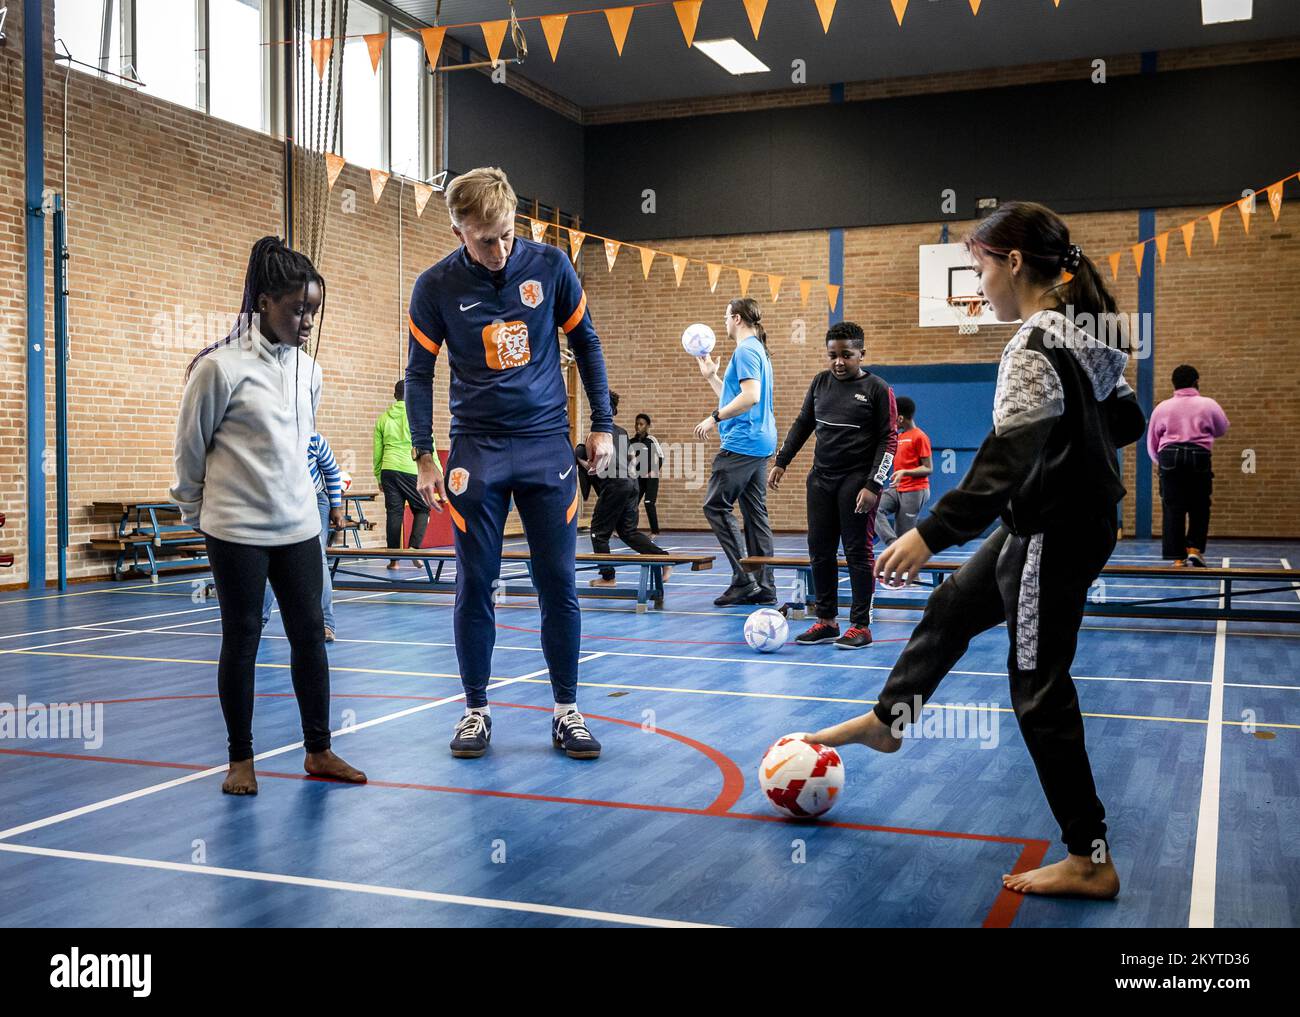 AMSTERDAM - 02/12/2022, Andries Jonker, nationaler Trainer des Oranje Leeuwinnen, gibt Fußballunterricht an seiner alten Schule, der Amsterdam Van Houte Schule für Sonderausbildung, im Rahmen des Schulfußballs im Klassenzimmer. ANP REMKO DE WAAL niederlande raus - belgien raus Stockfoto